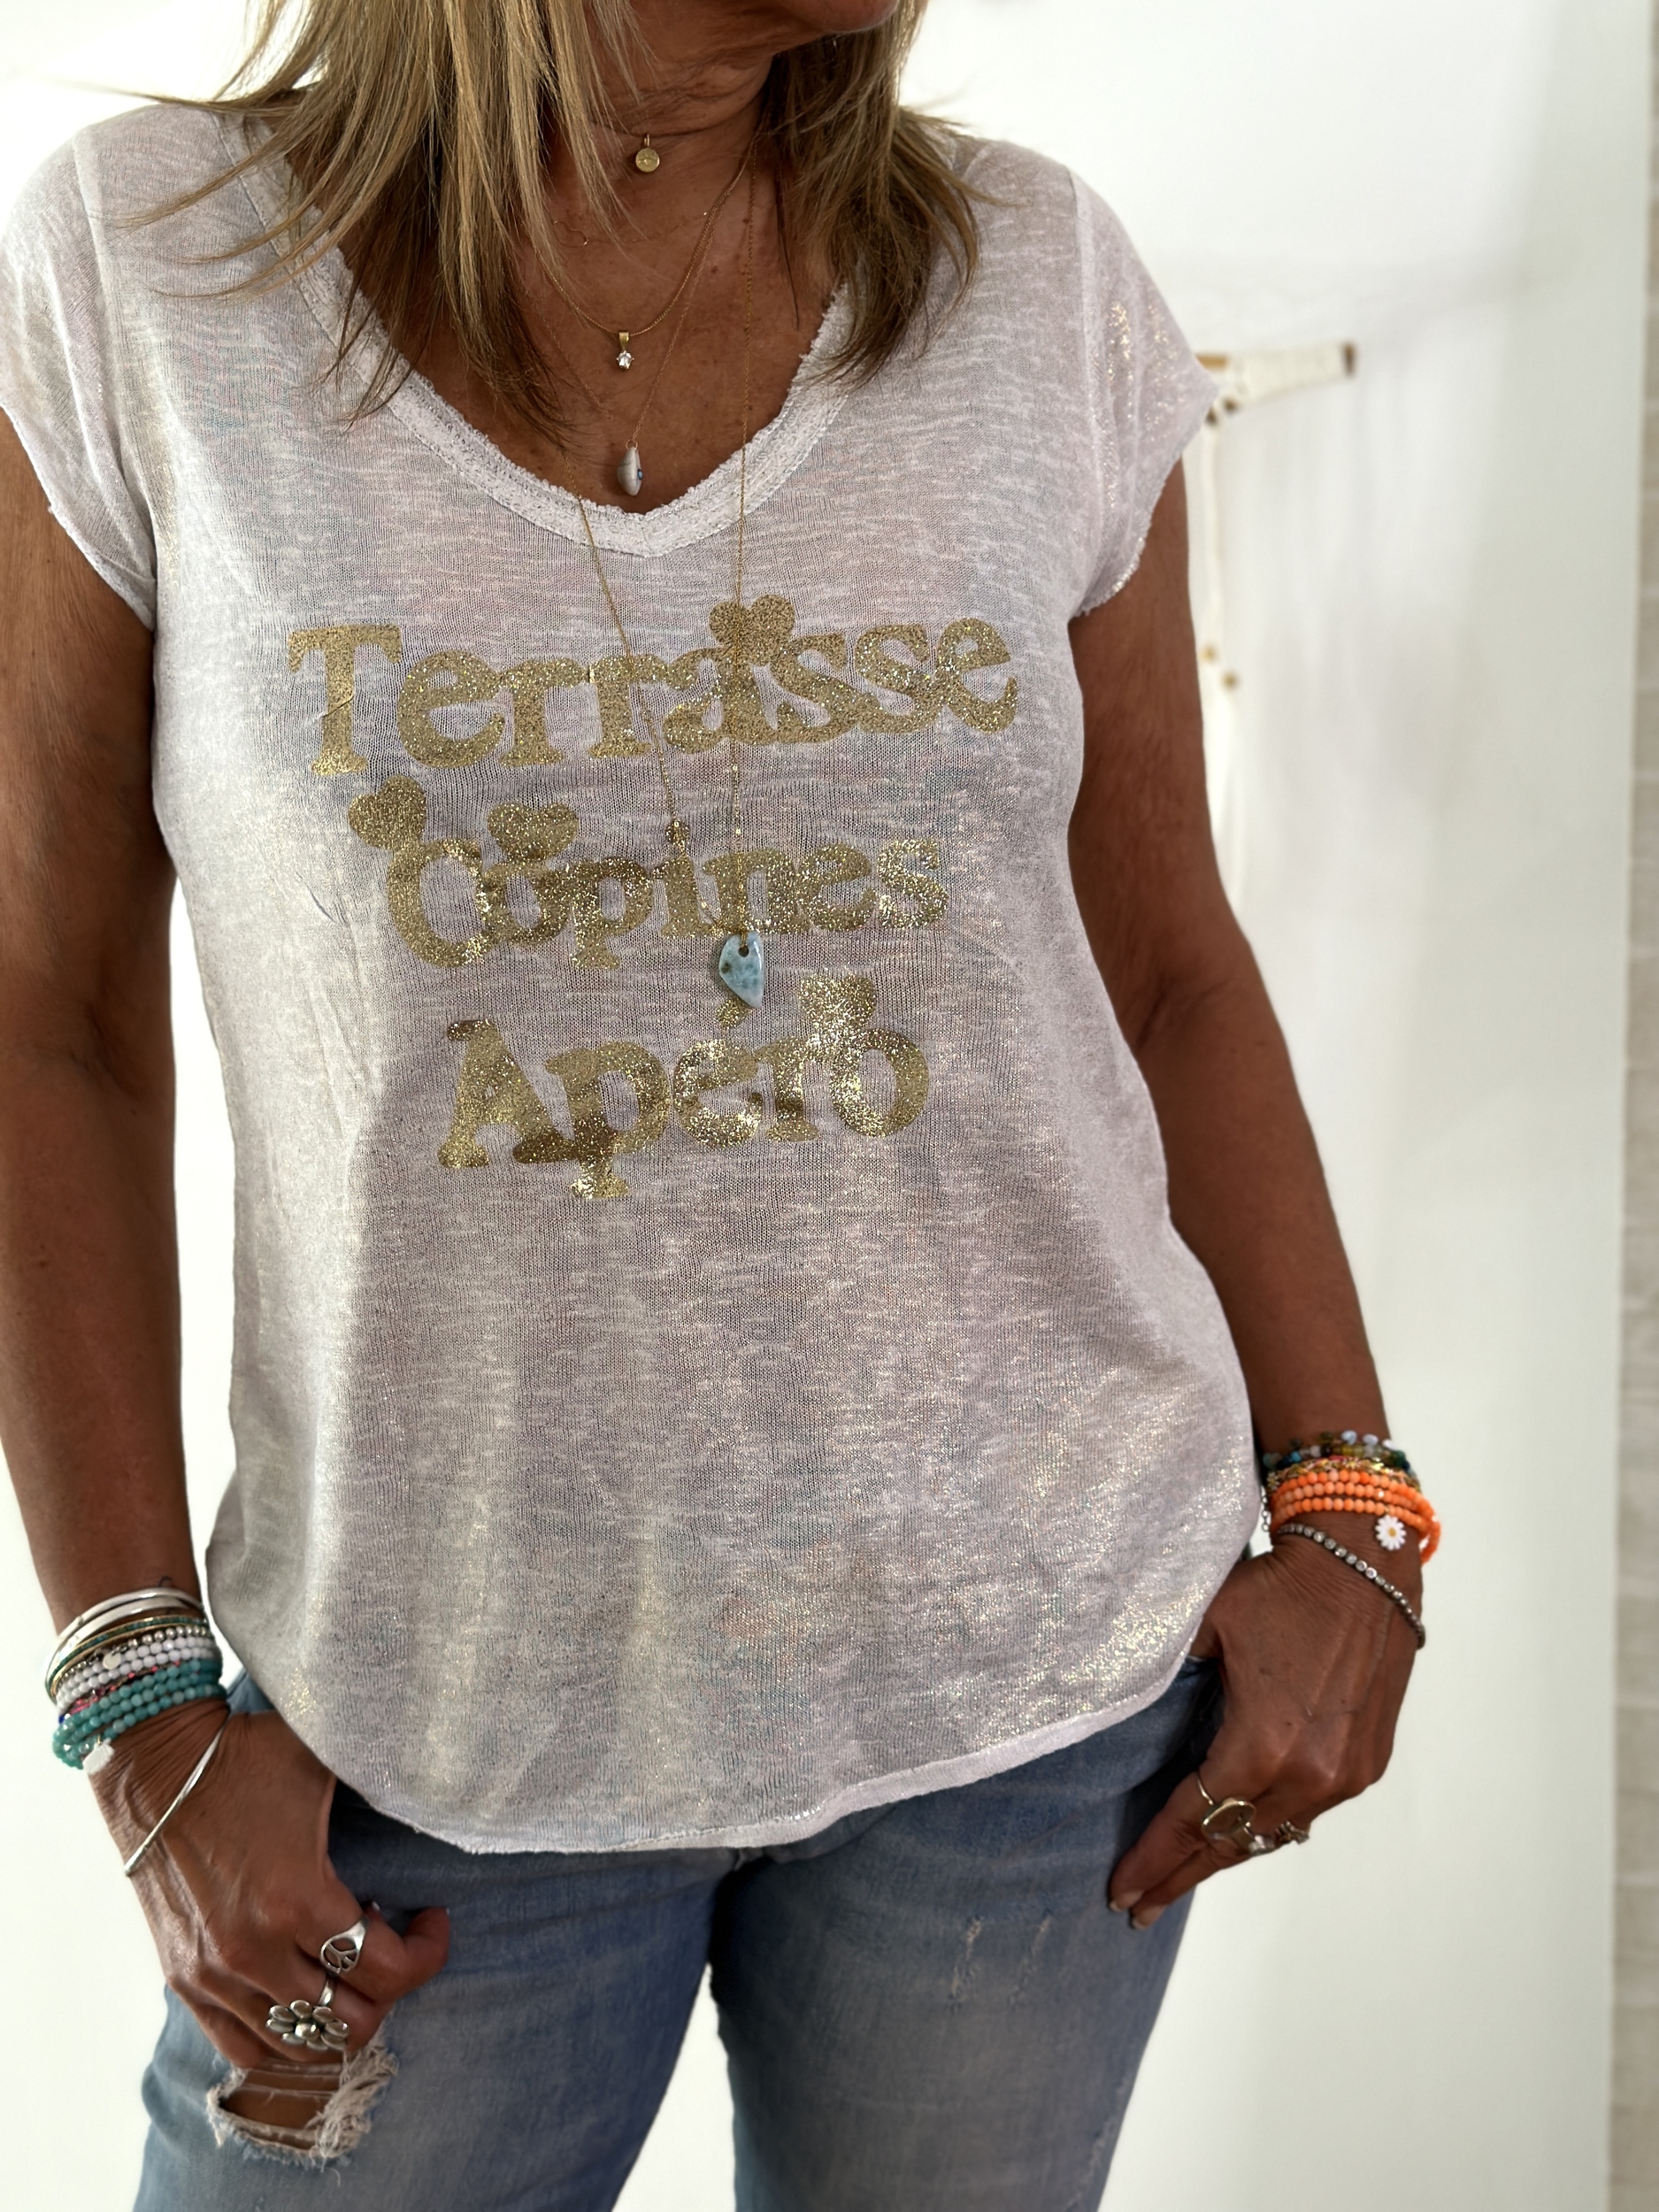 Tee shirt Terrasse Gold 1